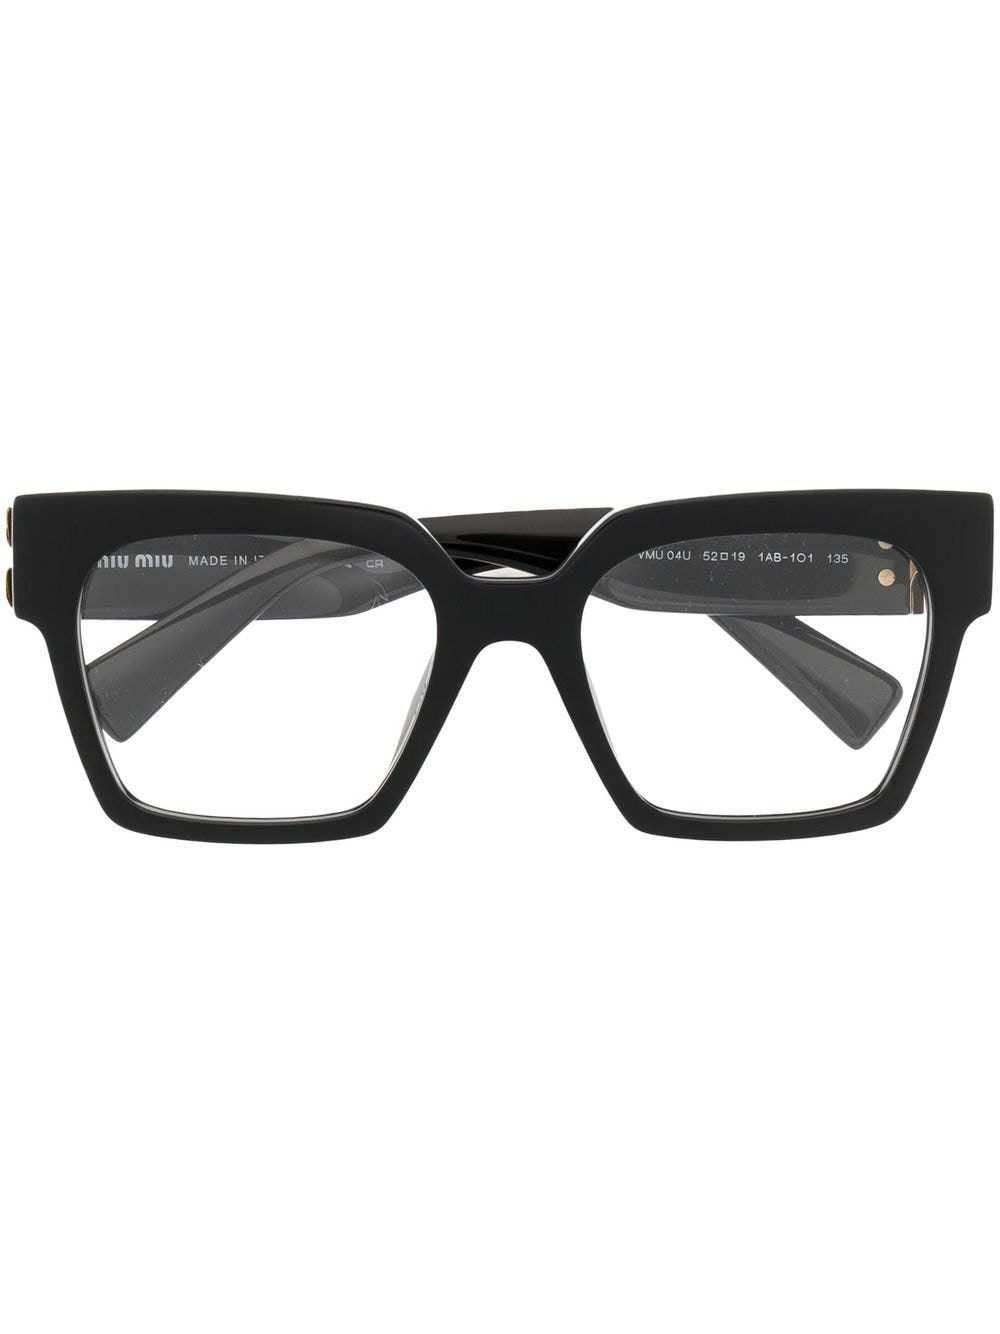 Miu Miu Eyewear square frame glasses - Black von Miu Miu Eyewear